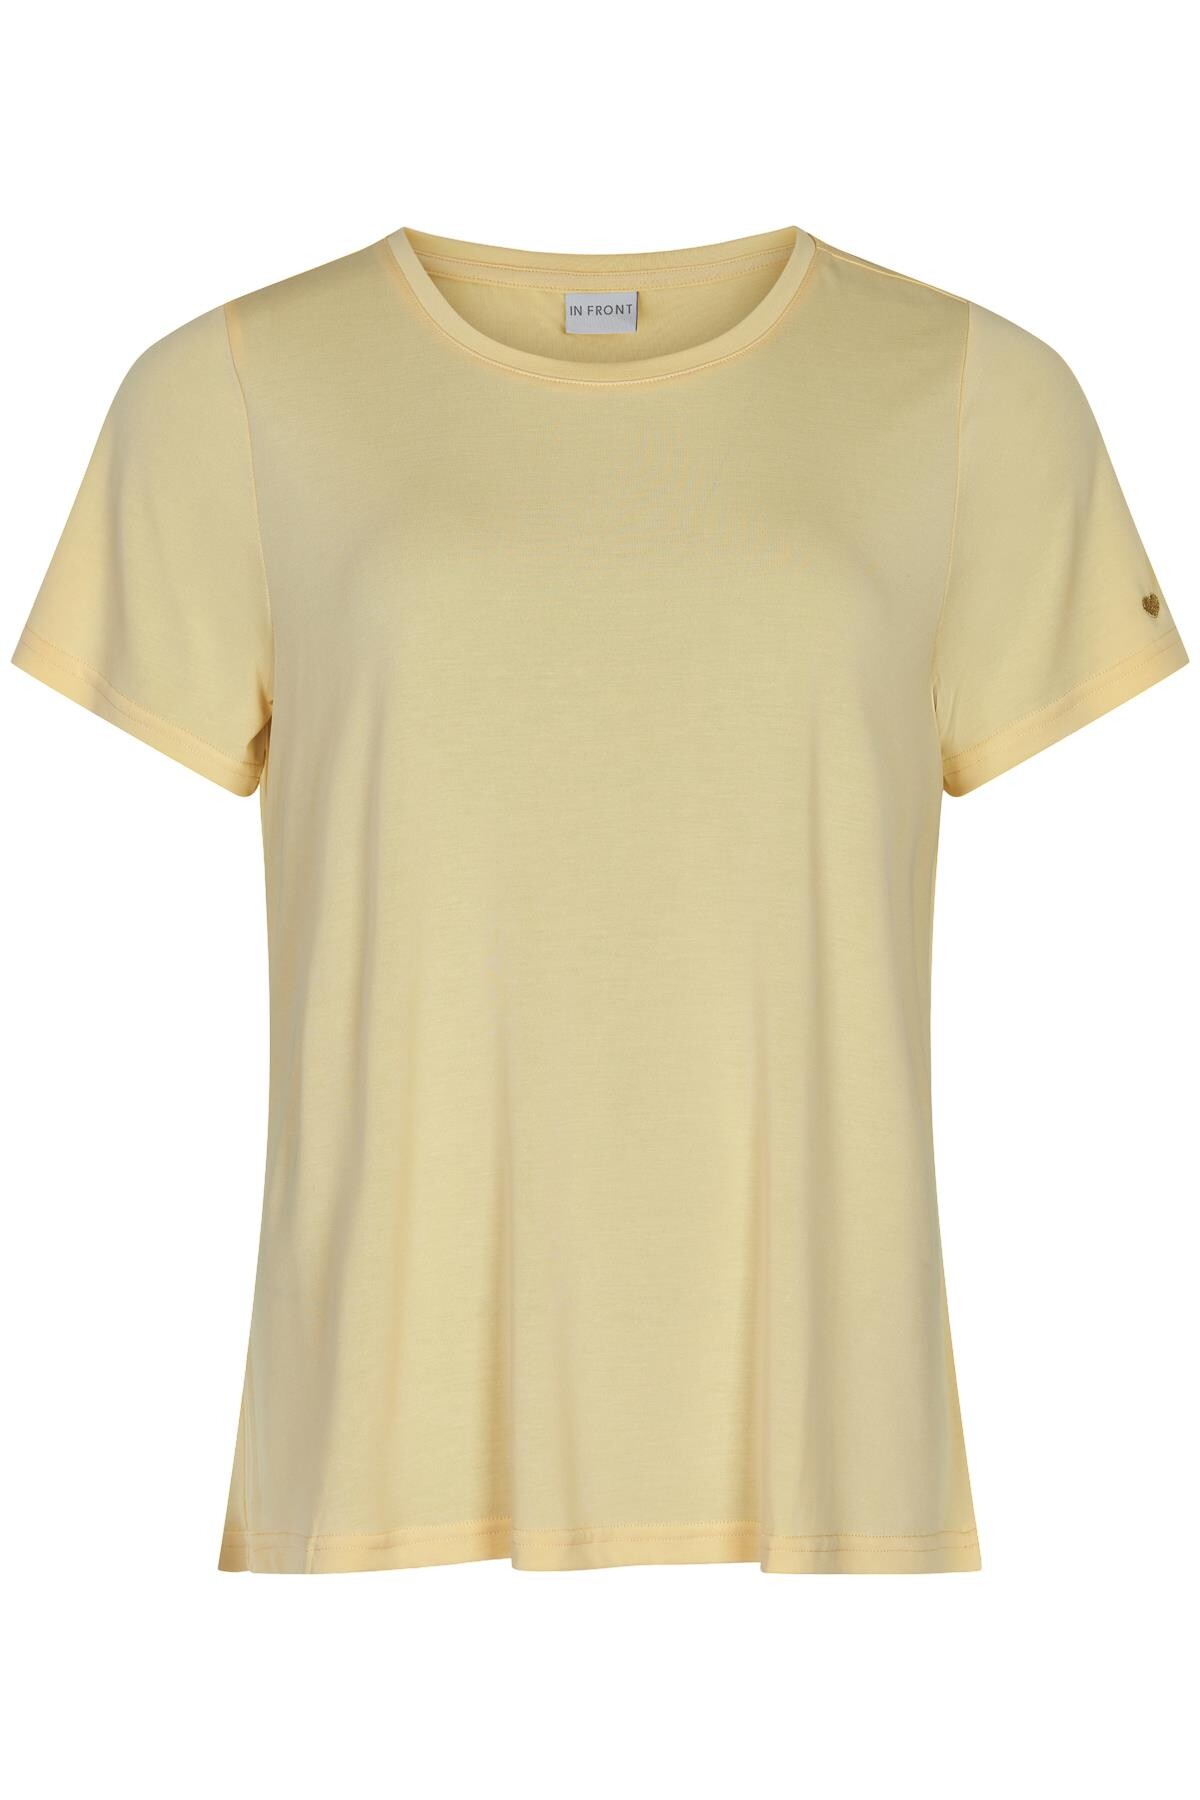 In Front Nina T-shirt, Farve: Gul, Størrelse: M, Dame